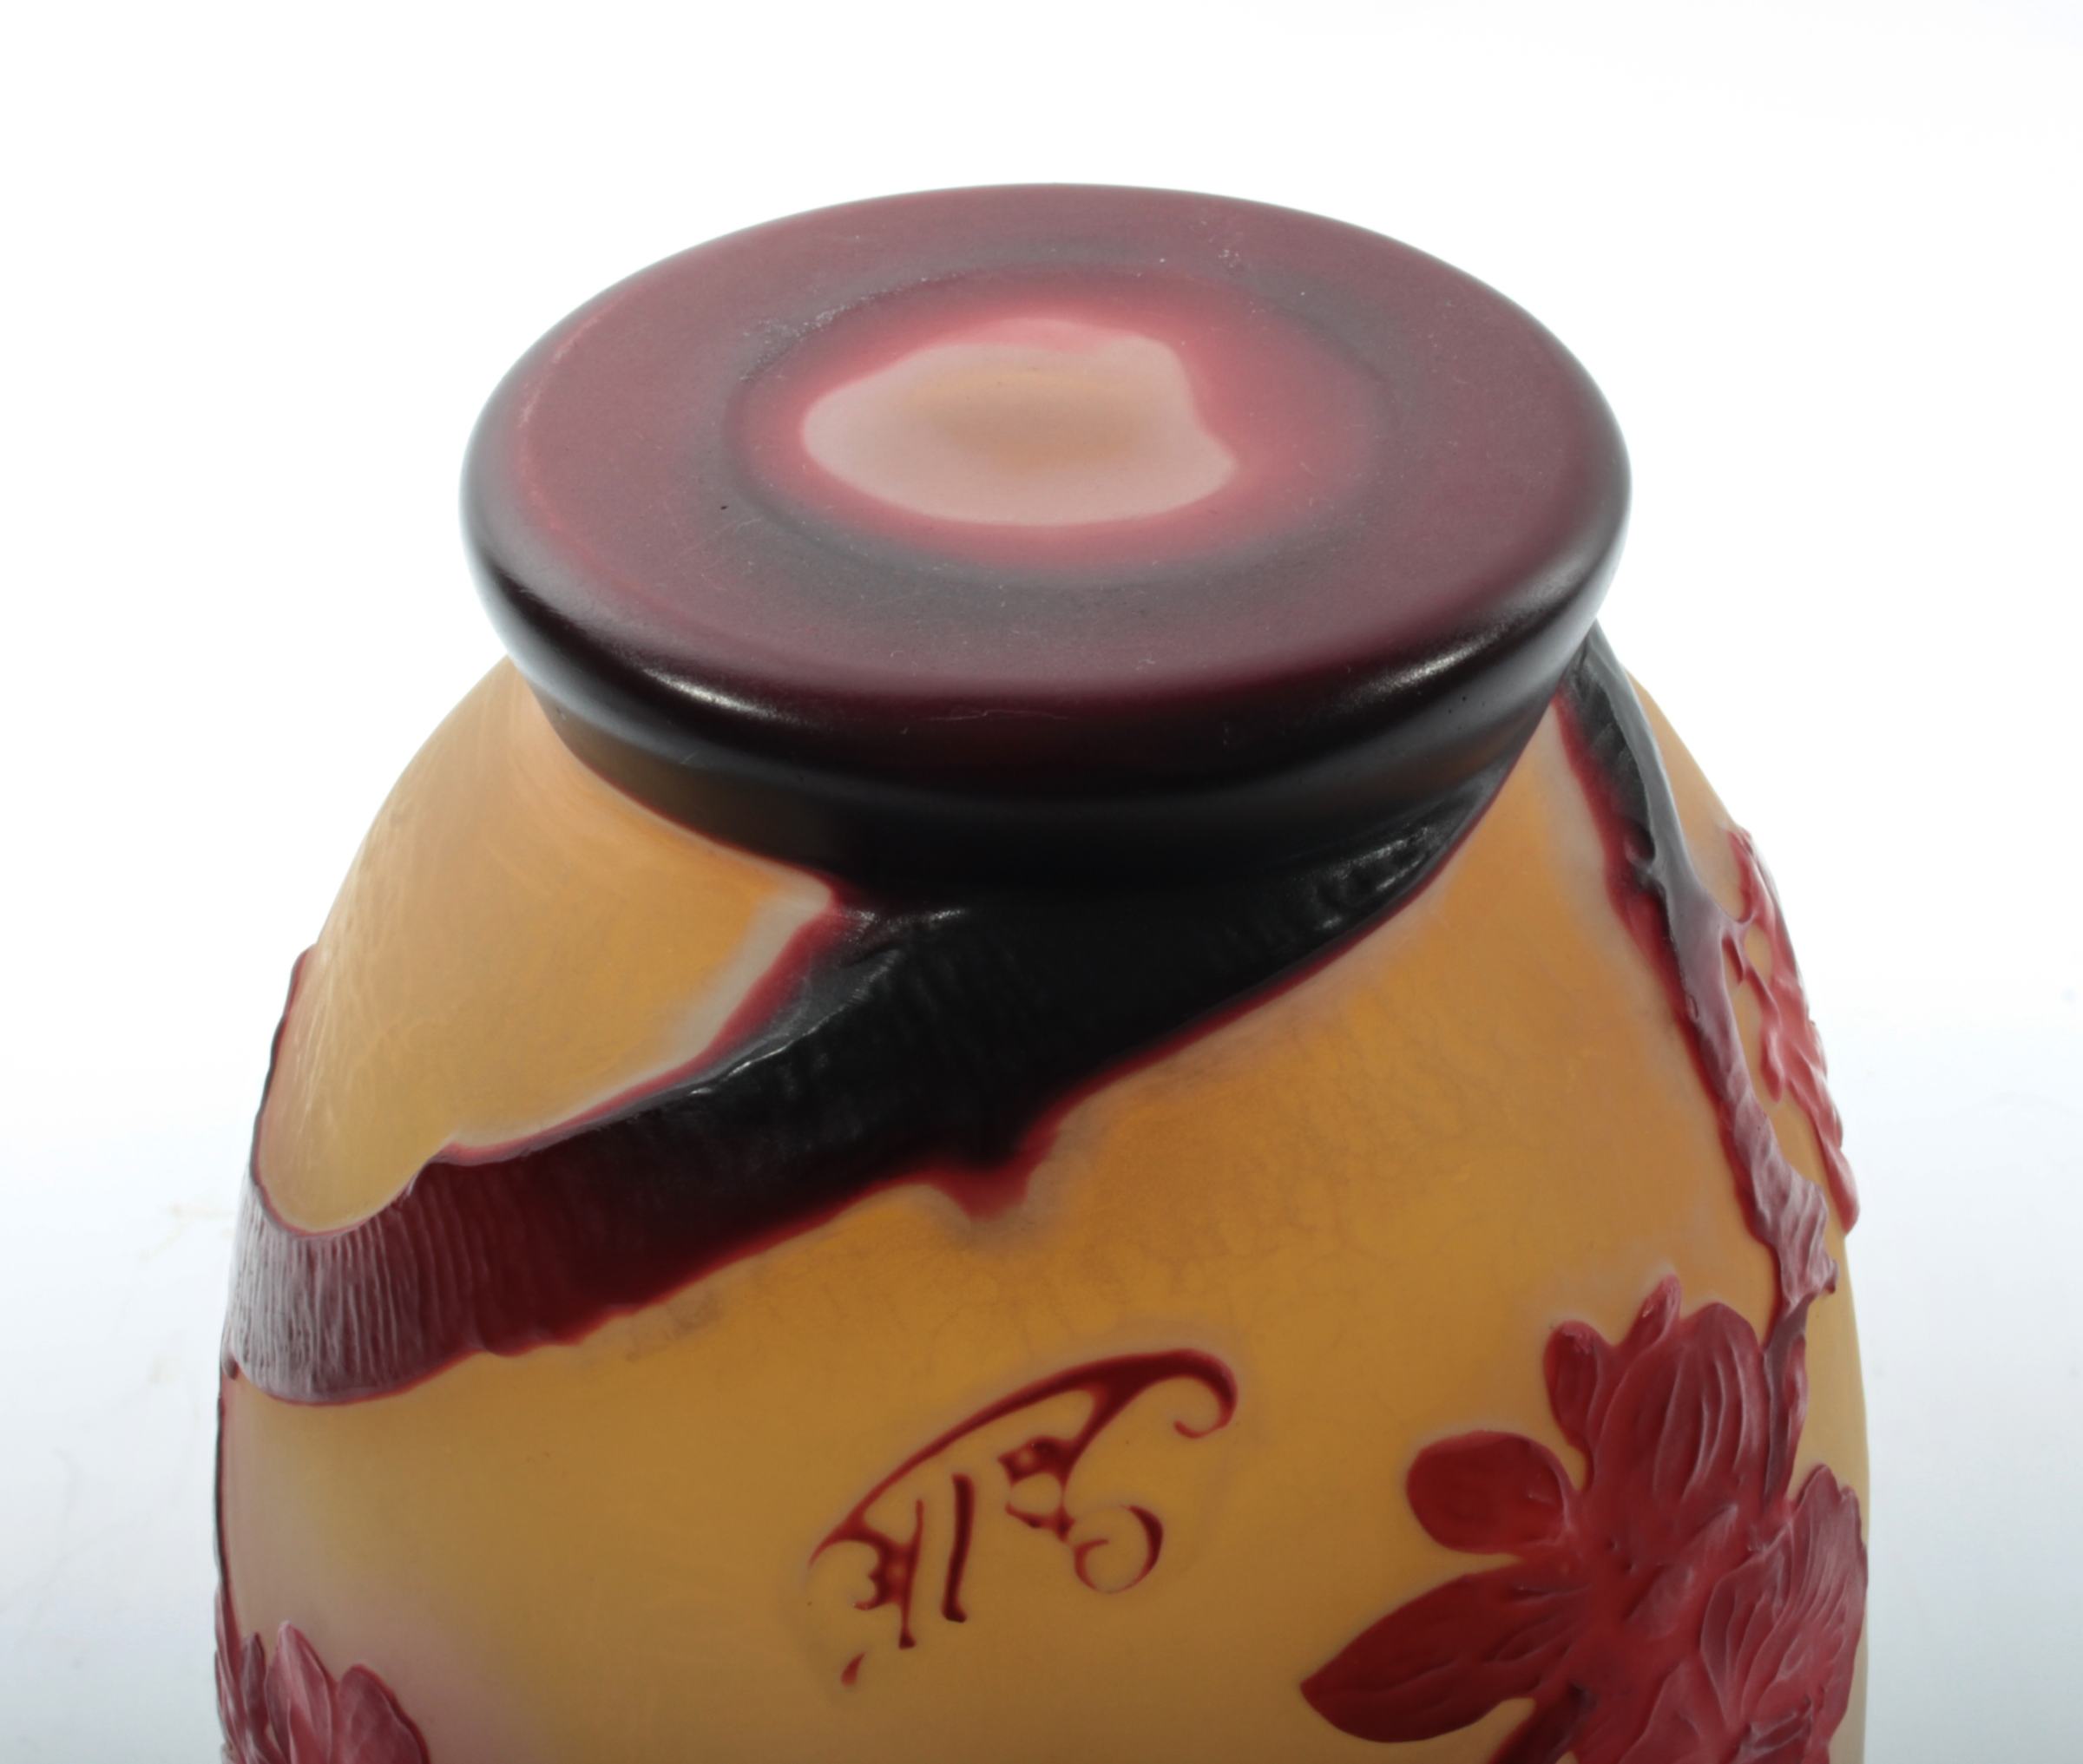 French Art Nouveau Fleurs de Pommier Cameo Glass Vase by Émile Gallé